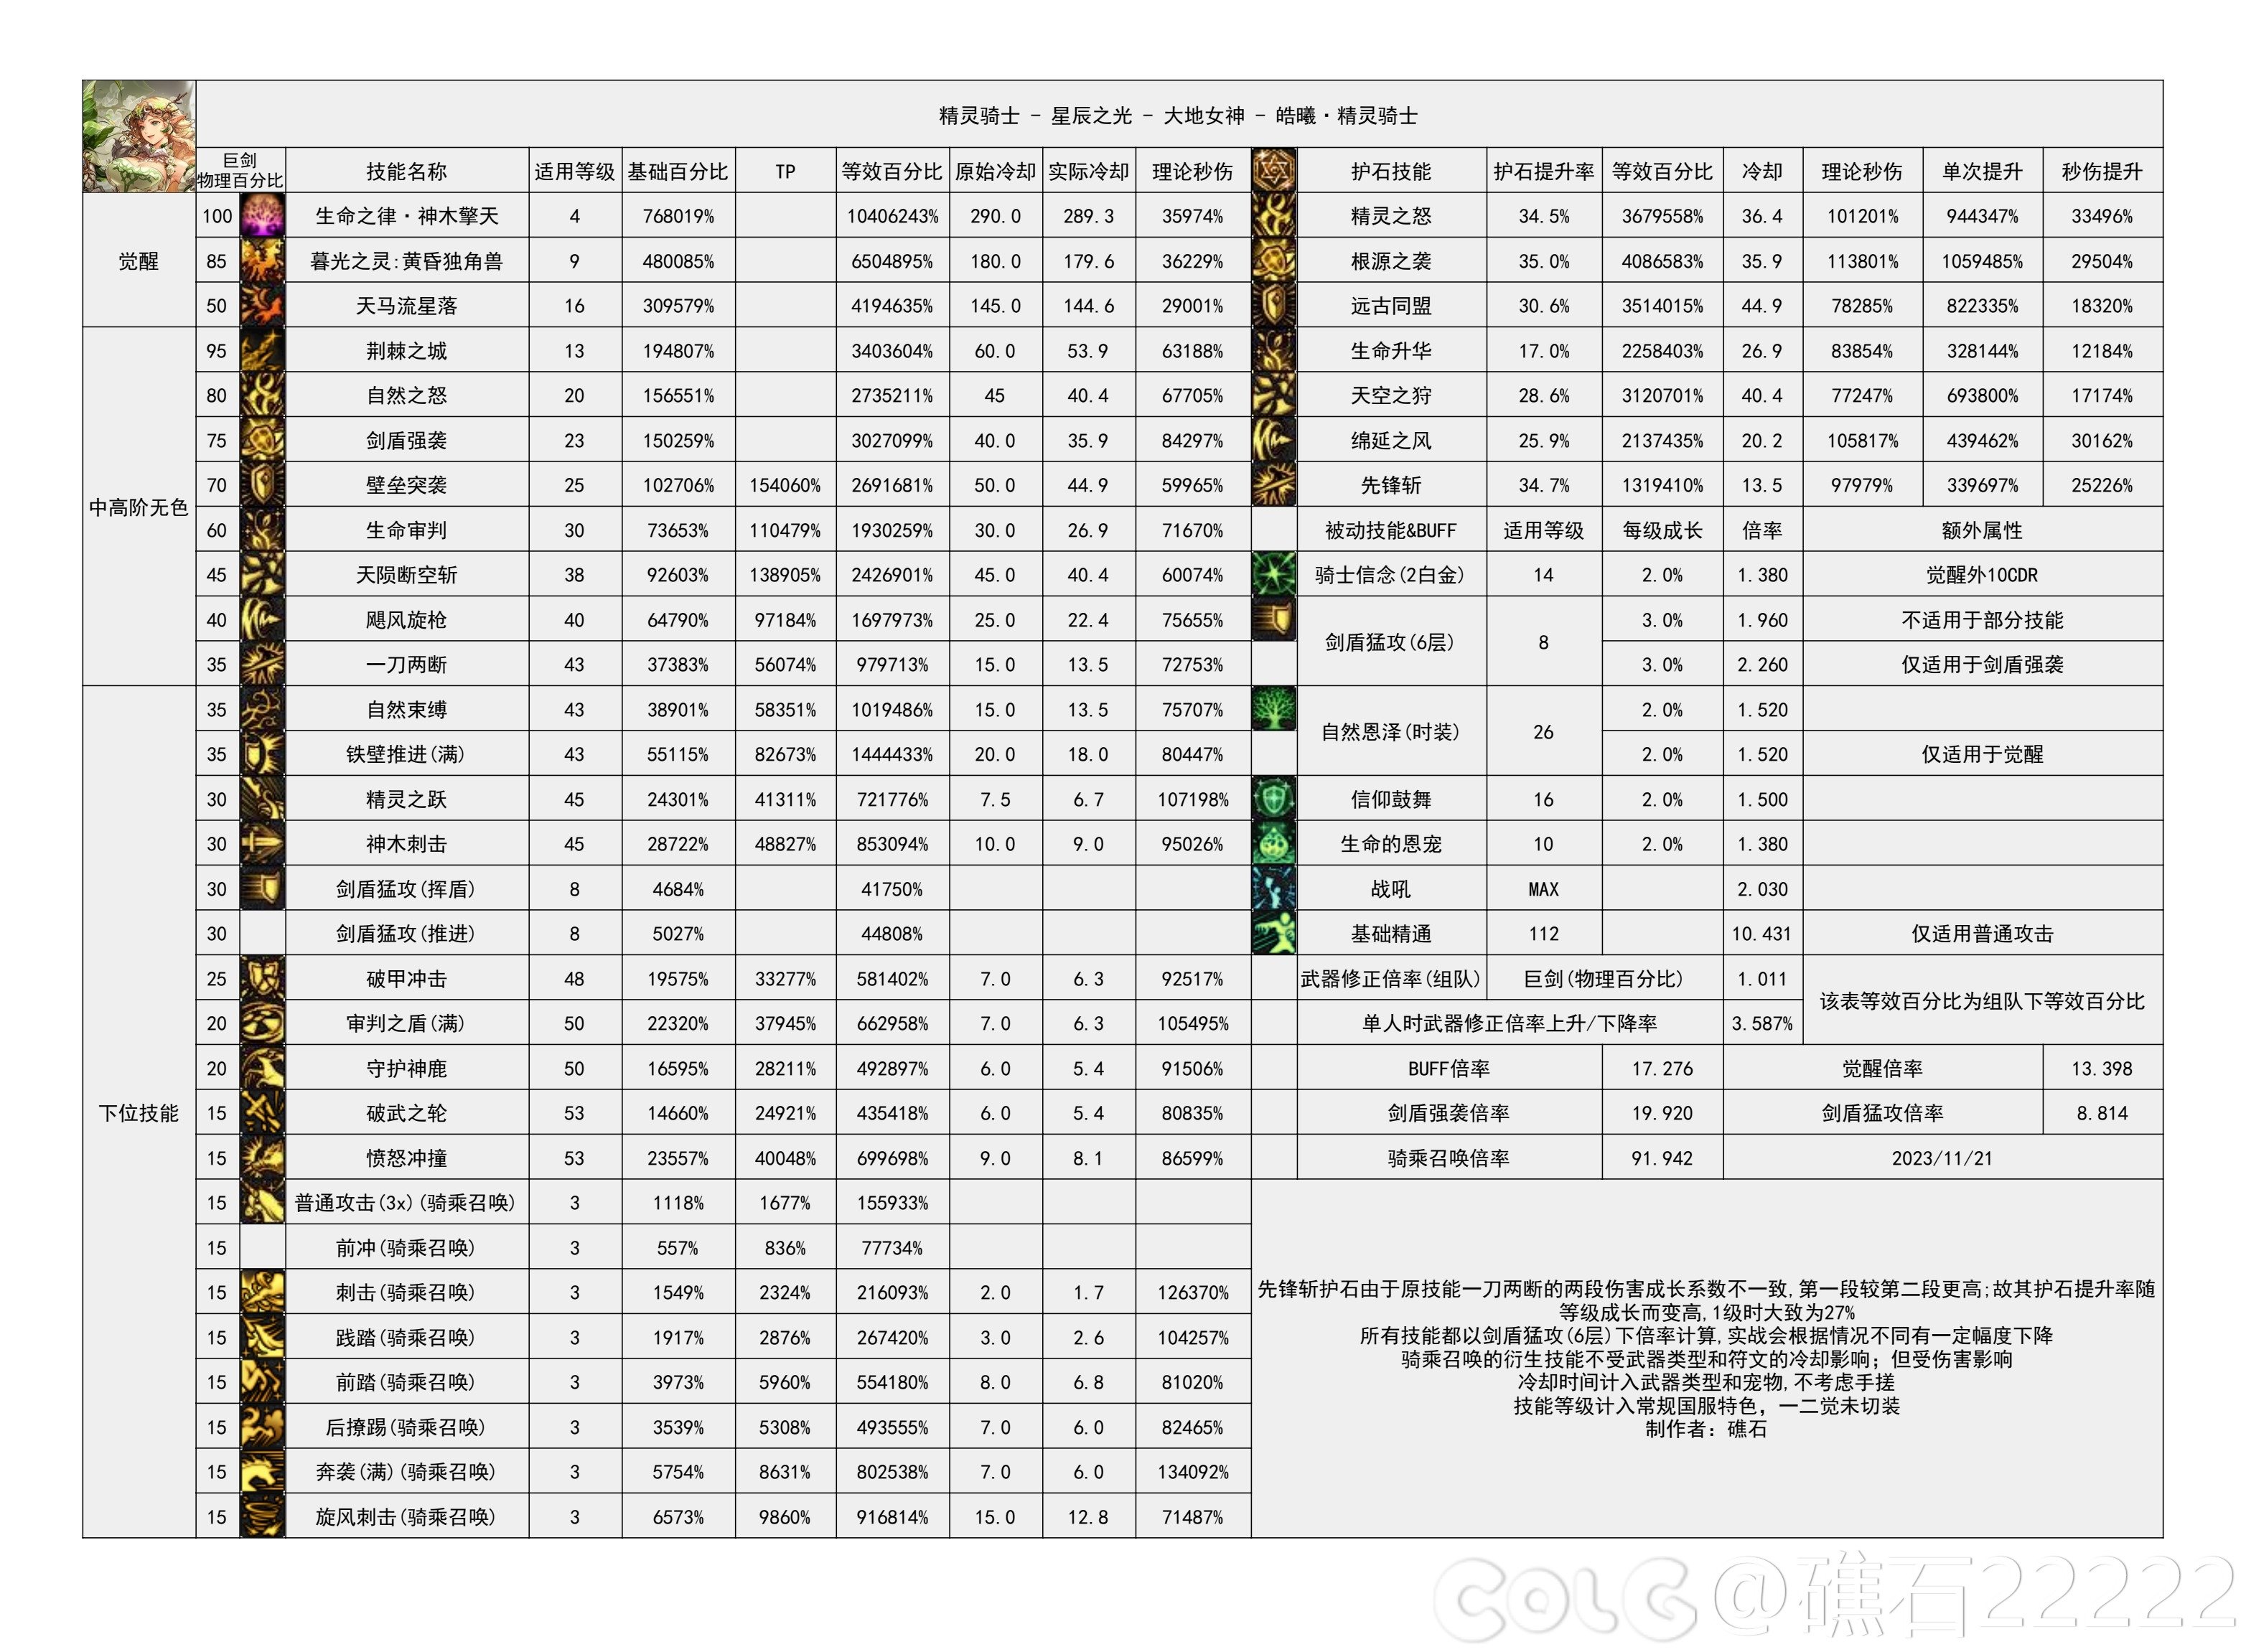 【国服现状】110版本输出职业数据表(国正5.15)(最新)65